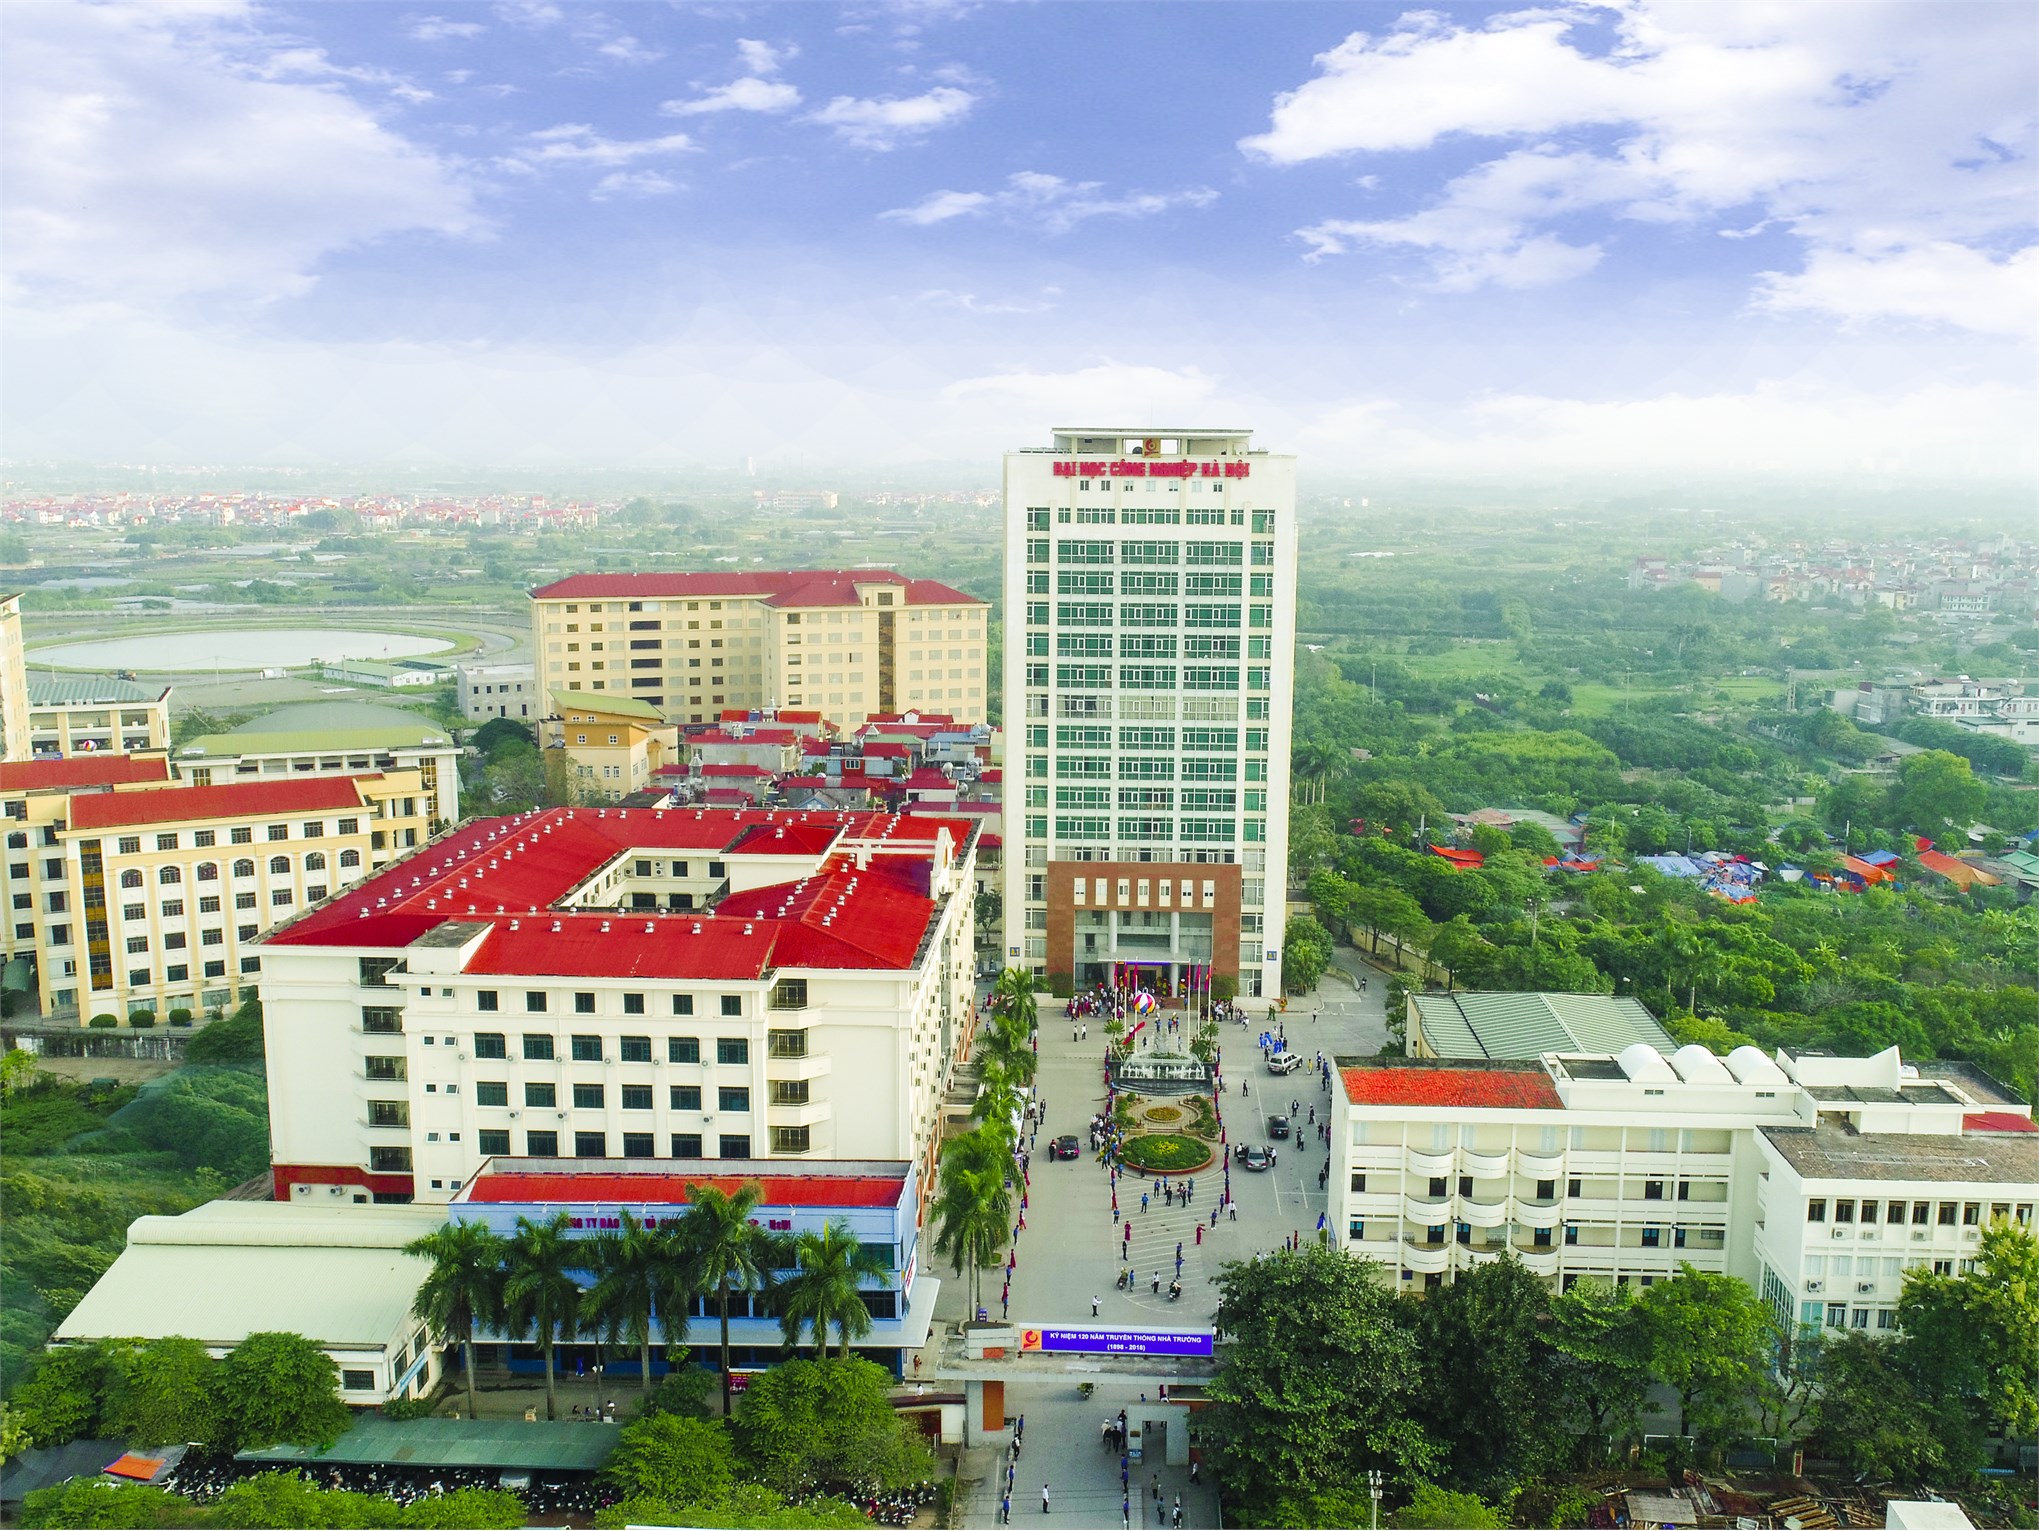 Đại học Công nghiệp Hà Nội thành công với mô hình đại học điện tử, hướng tới xây dựng đại học thông minh